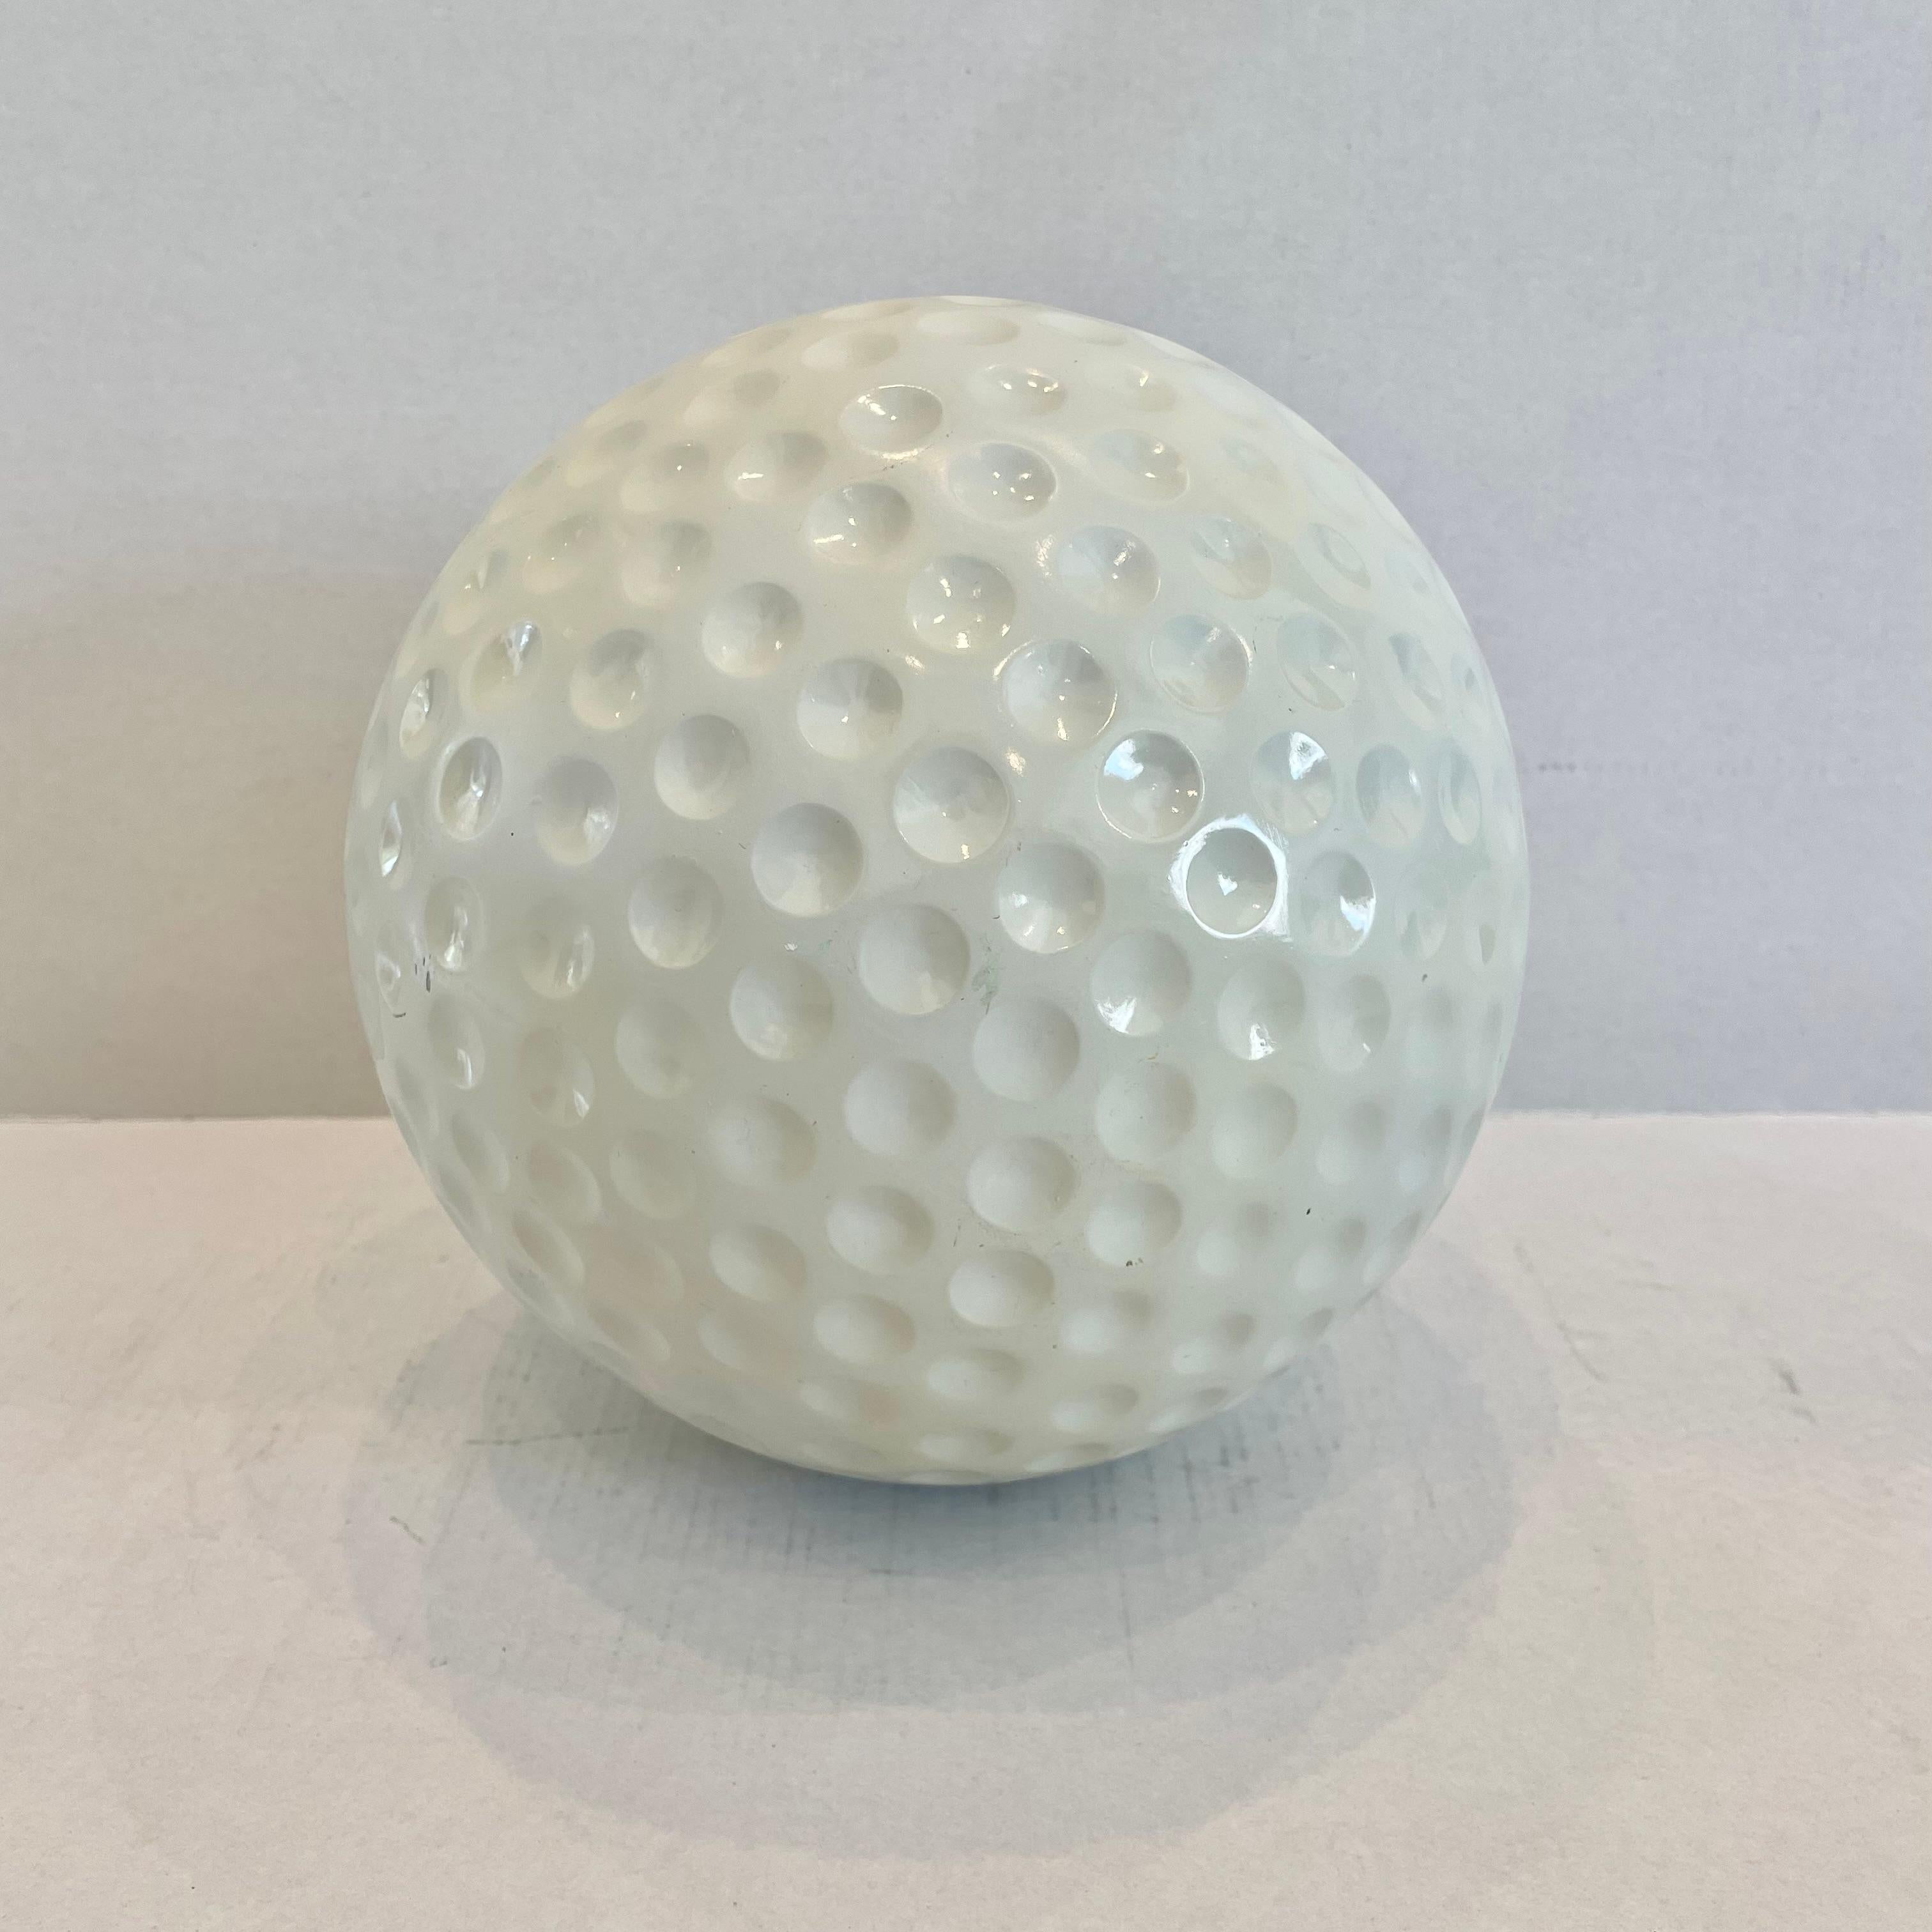 Balle de golf géante vintage en plâtre/plastique crème. 8.5